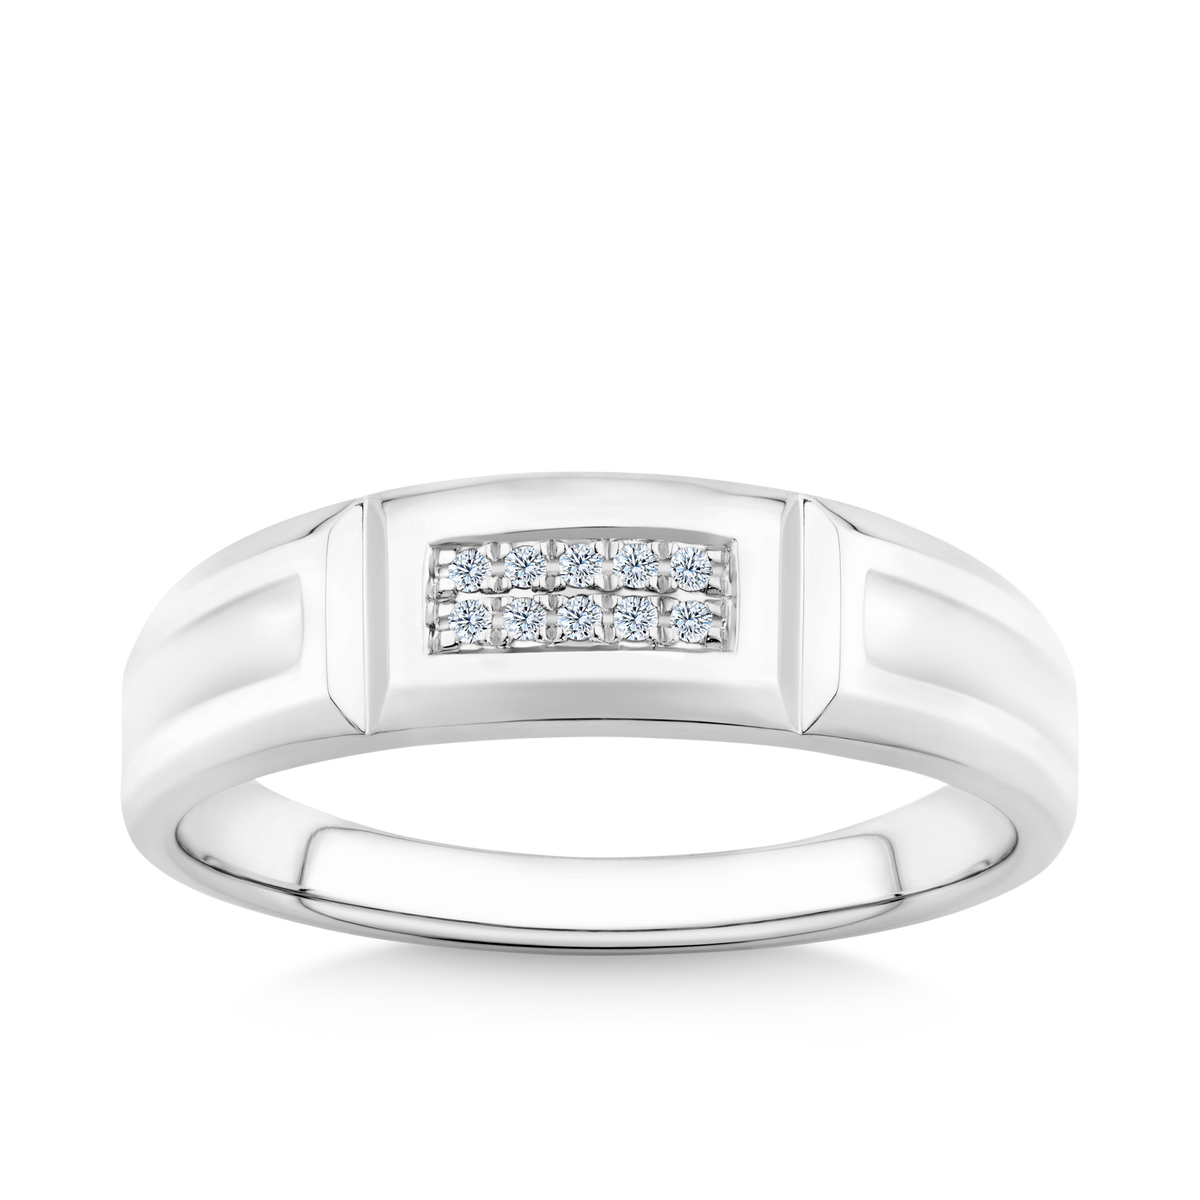 Men's Diamond Ring in Sterling Silver